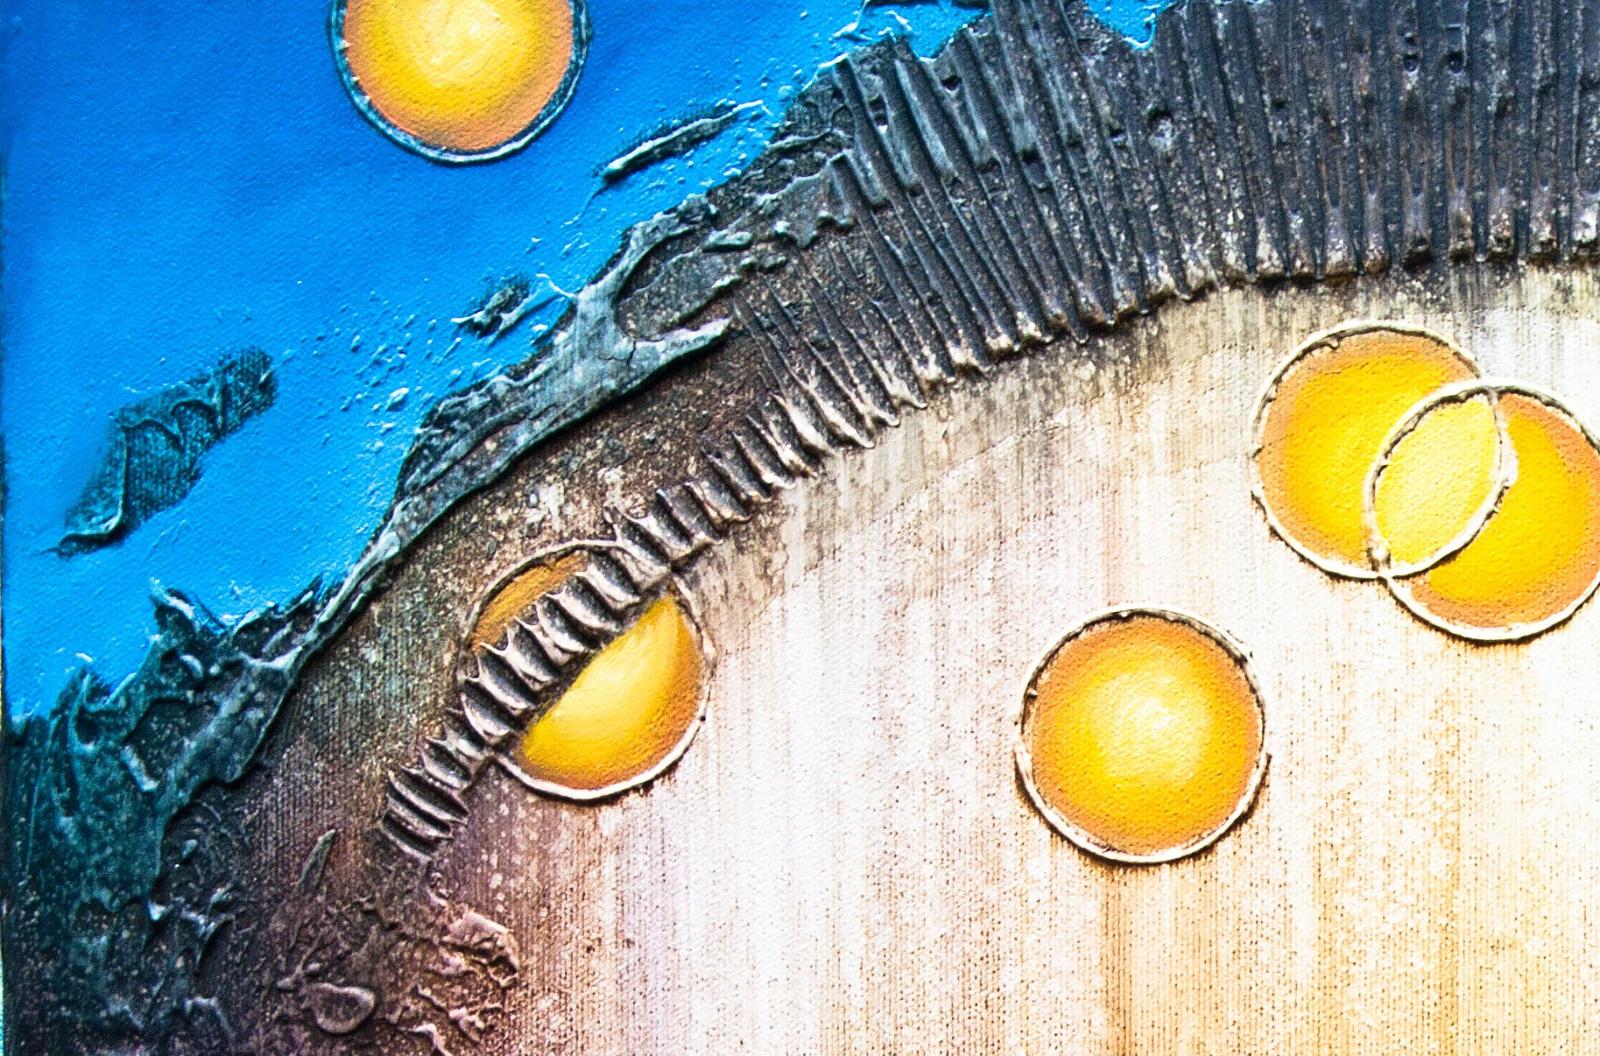 Jačmienok - maľba na 3D reliéfe - akryl + olej - lakované - 60x40cm n6719 - Starožitnosti a umenie